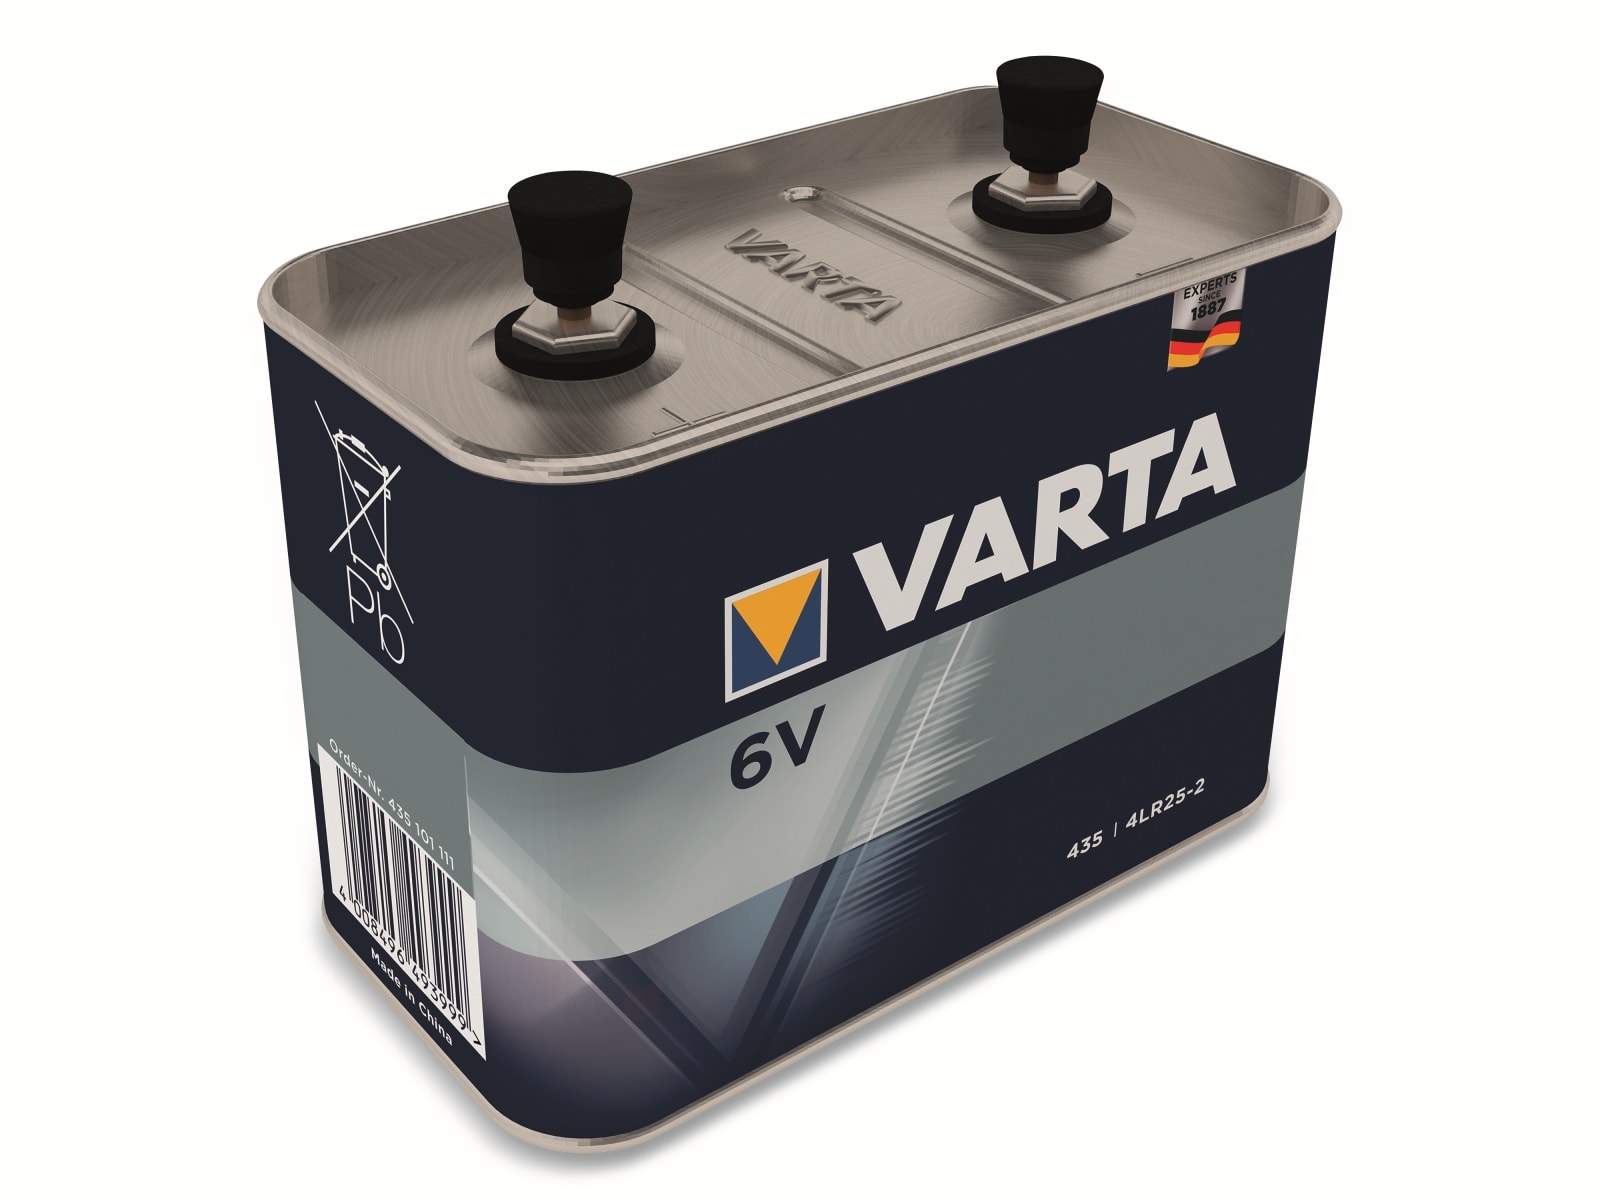 VARTA Batterie Alkaline, 435, 6V, 35.000mAh, Shrinkwrap (1-Pack)